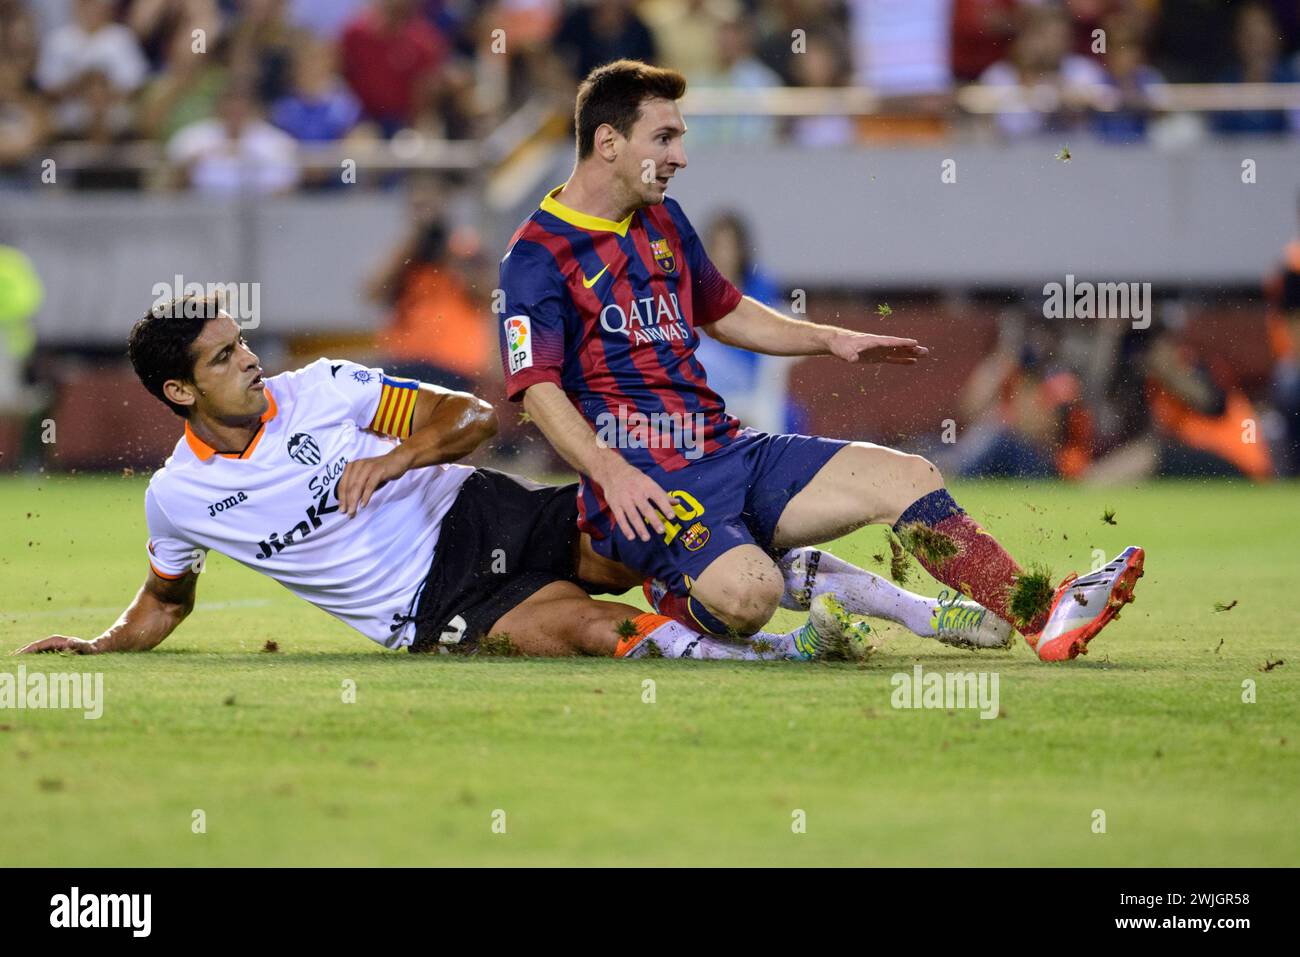 Der Leo Messi des Futbol Club Barcelona ist nach einem harten Tackle des portugiesischen Verteidigers Rui Costa, Valencia, Spanien, am Boden im Einsatz. Stockfoto